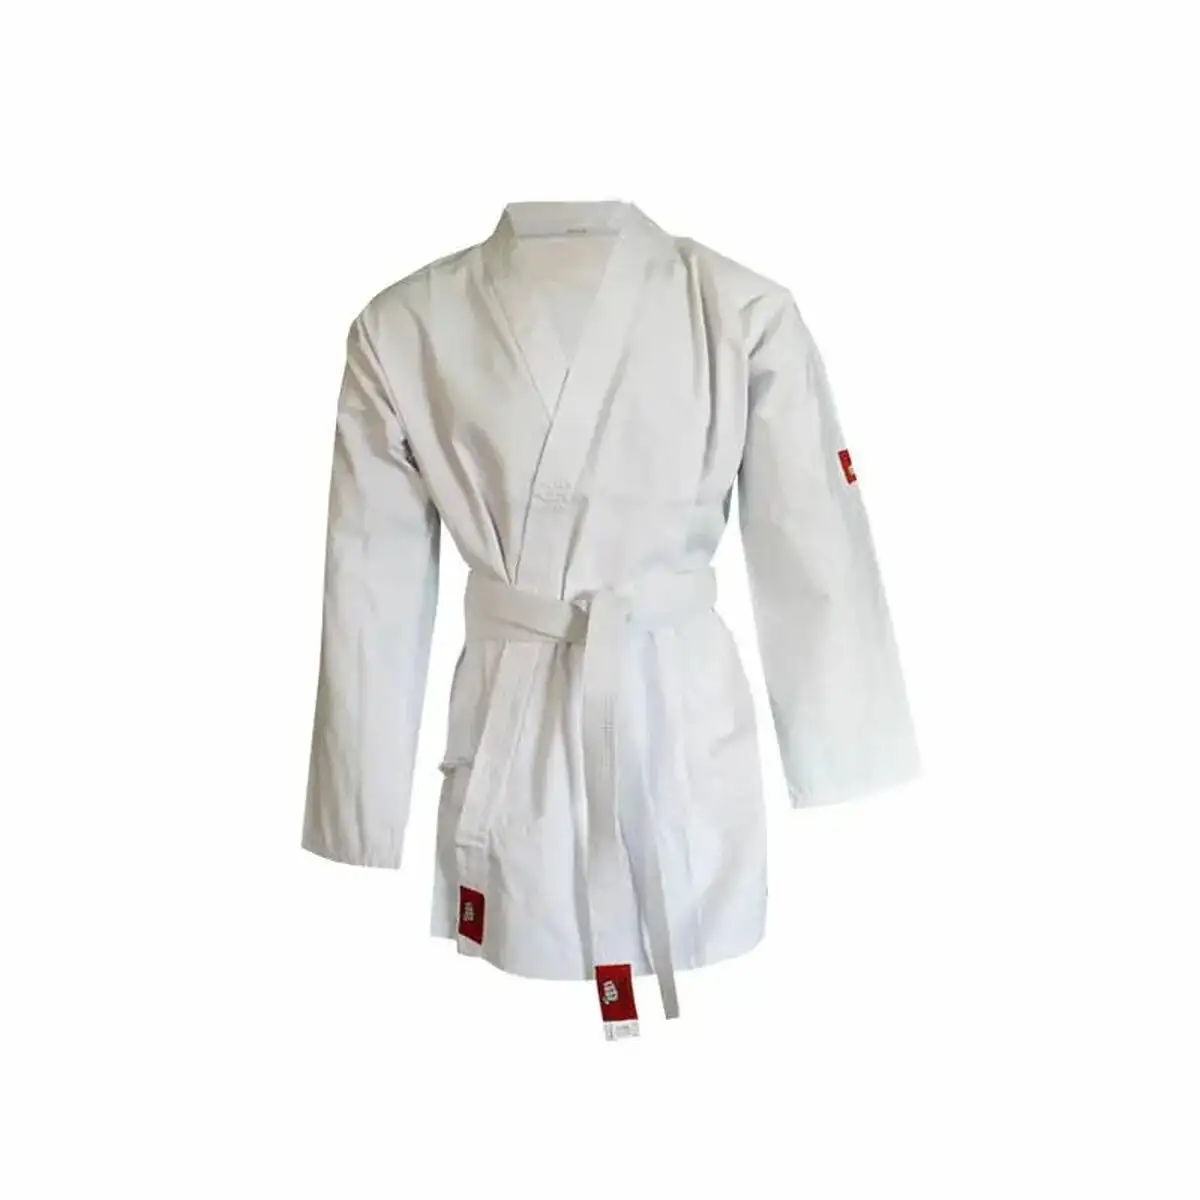 Kimono jim sports yoshiro karategui blanc 190 cm _1962. DIAYTAR SENEGAL - Votre Destination Shopping Incontournable. Parcourez nos rayons virtuels et trouvez des articles qui répondent à tous vos besoins, du quotidien à l'exceptionnel.